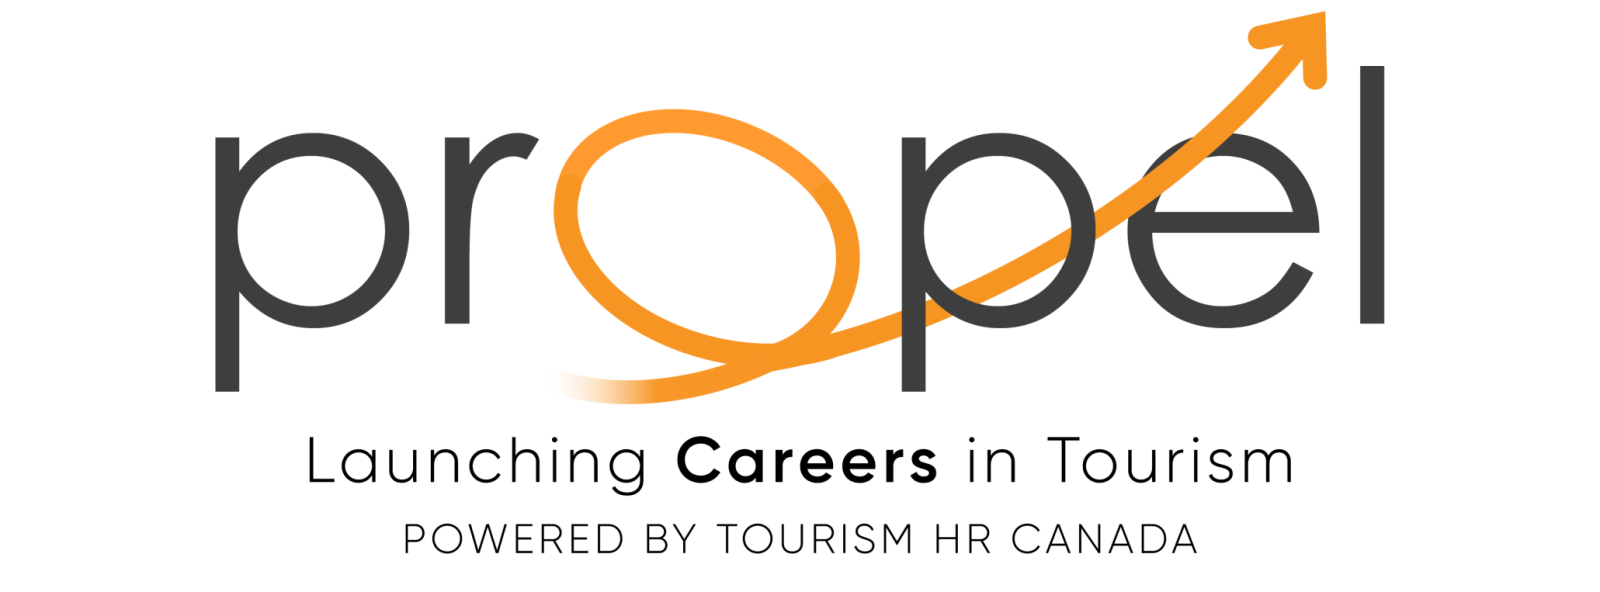 Tourism HR Canada